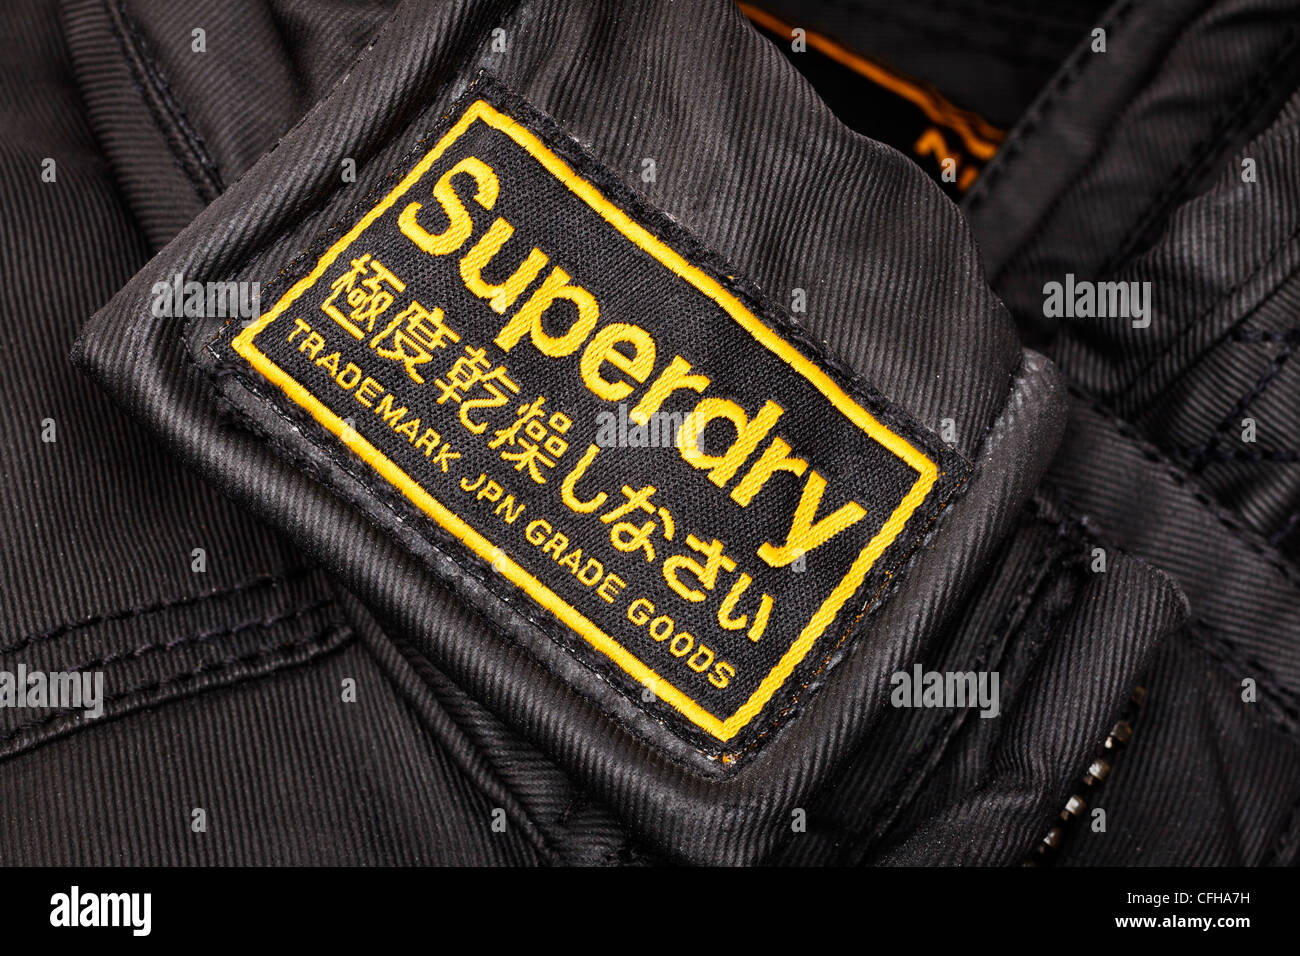 Superdry vestiti etichetta del marchio Foto Stock